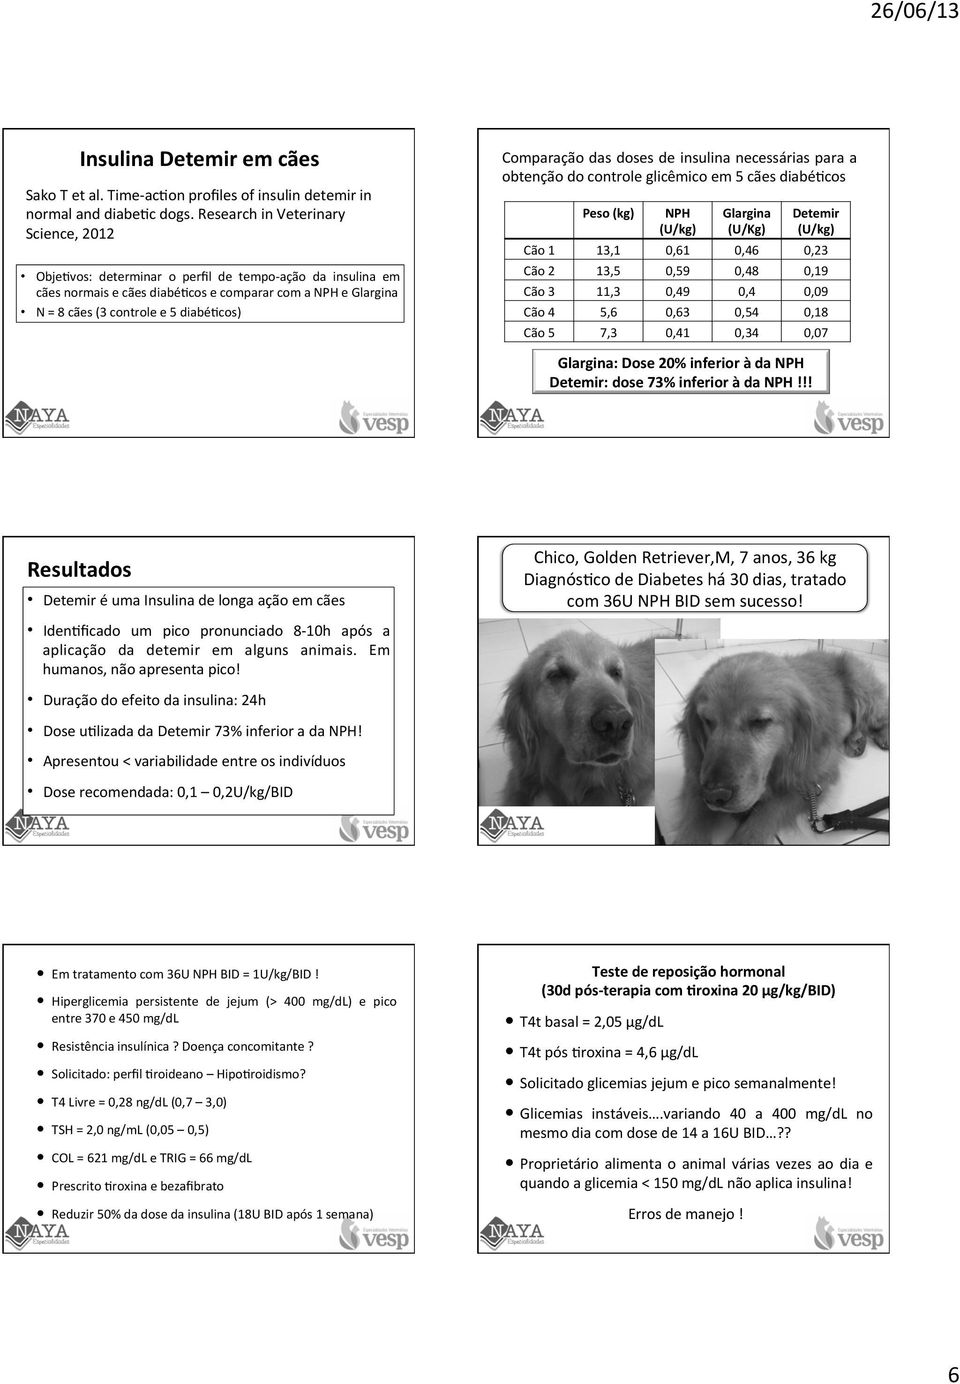 Comparação das doses de insulina necessárias para a obtenção do controle glicêmico em 5 cães diabéfcos Peso (kg) NPH (U/kg) Glargina (U/Kg) Detemir (U/kg) Cão 1 13,1 0,61 0,46 0,23 Cão 2 13,5 0,59